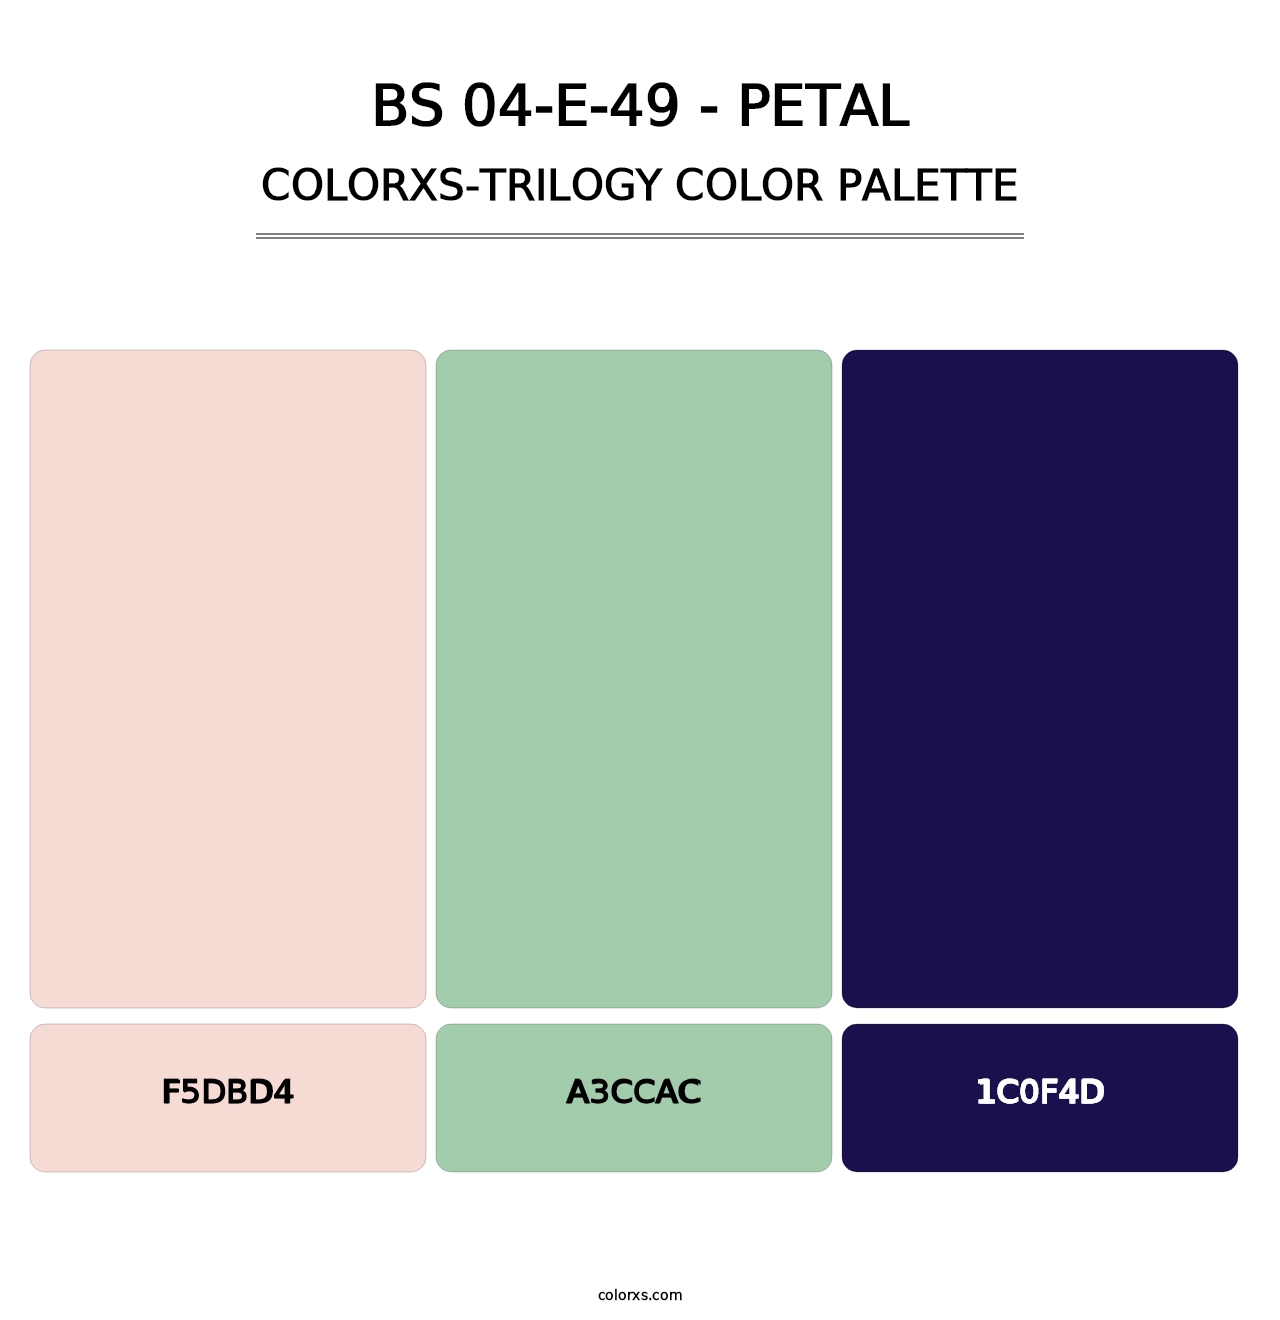 BS 04-E-49 - Petal - Colorxs Trilogy Palette